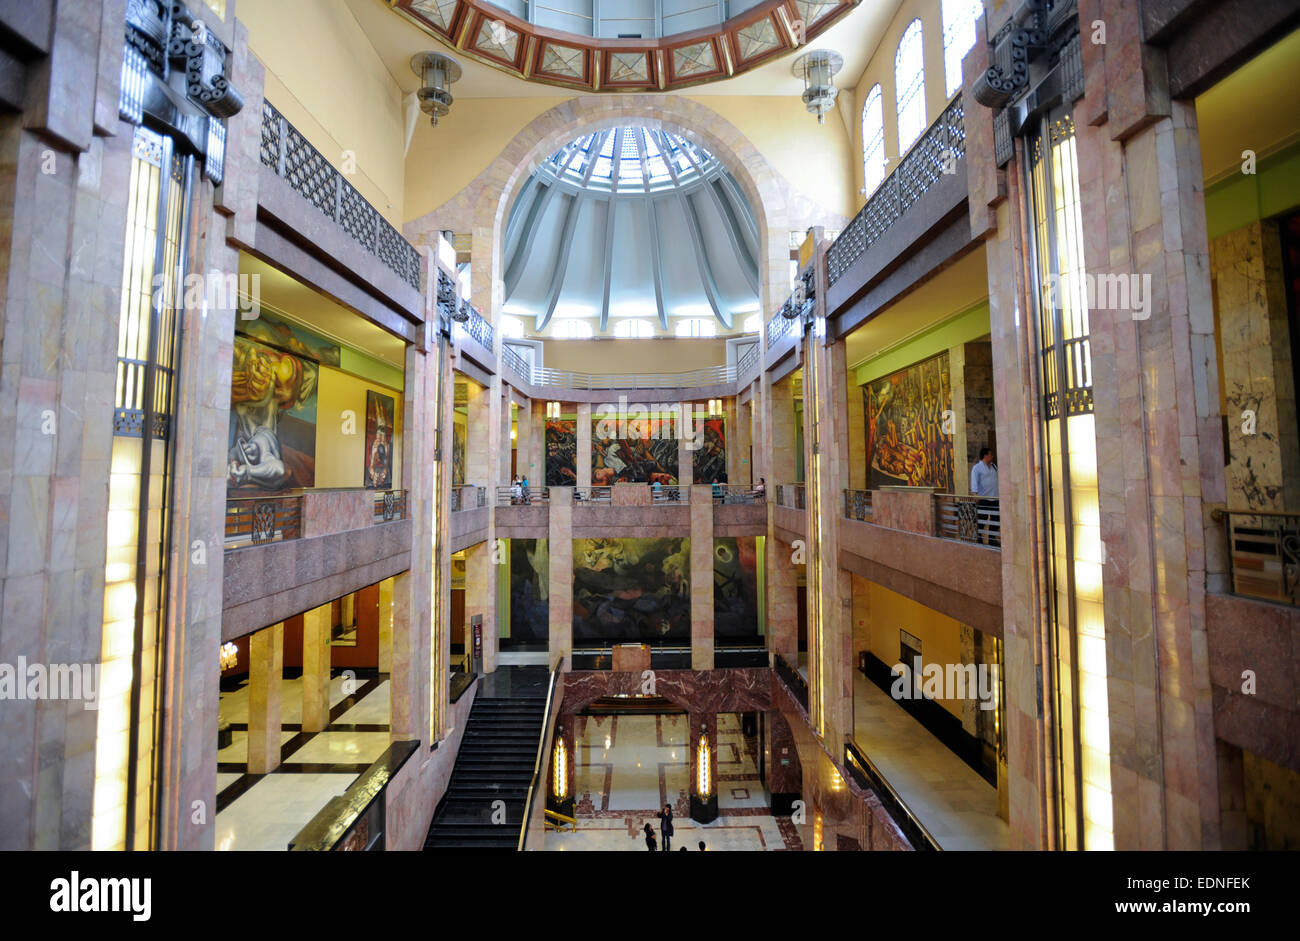 Palacio de Bellas Artes Museum, Mexico City, Mexiko. Carrara Marmorsäulen in Messehallen. Marotti Glas & Eisen Dachkuppel. Stockfoto